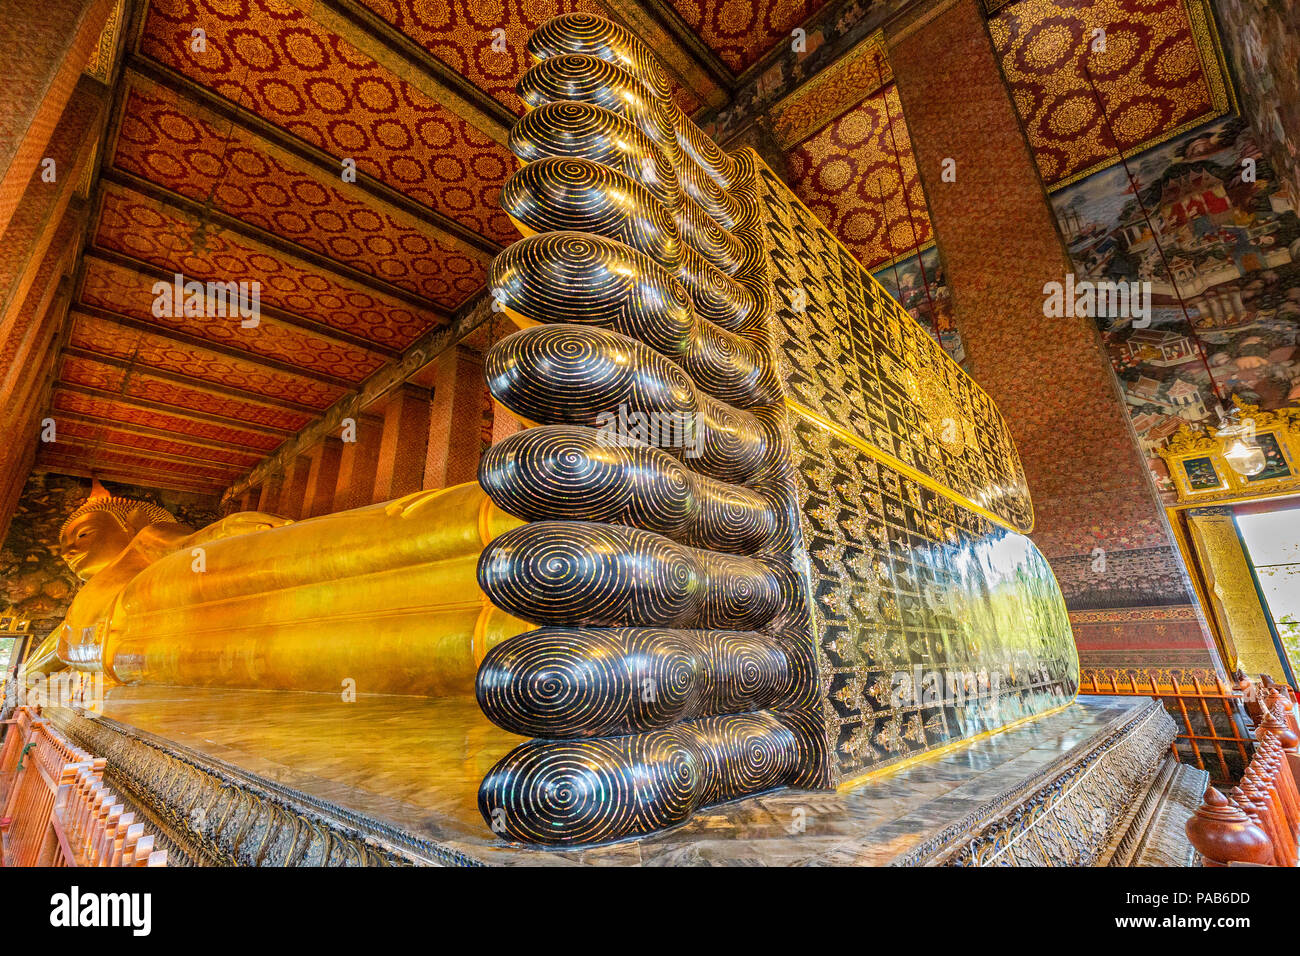 Golden Buda reclinado en el templo de Wat Pho, en Bangkok, Tailandia. Foto de stock